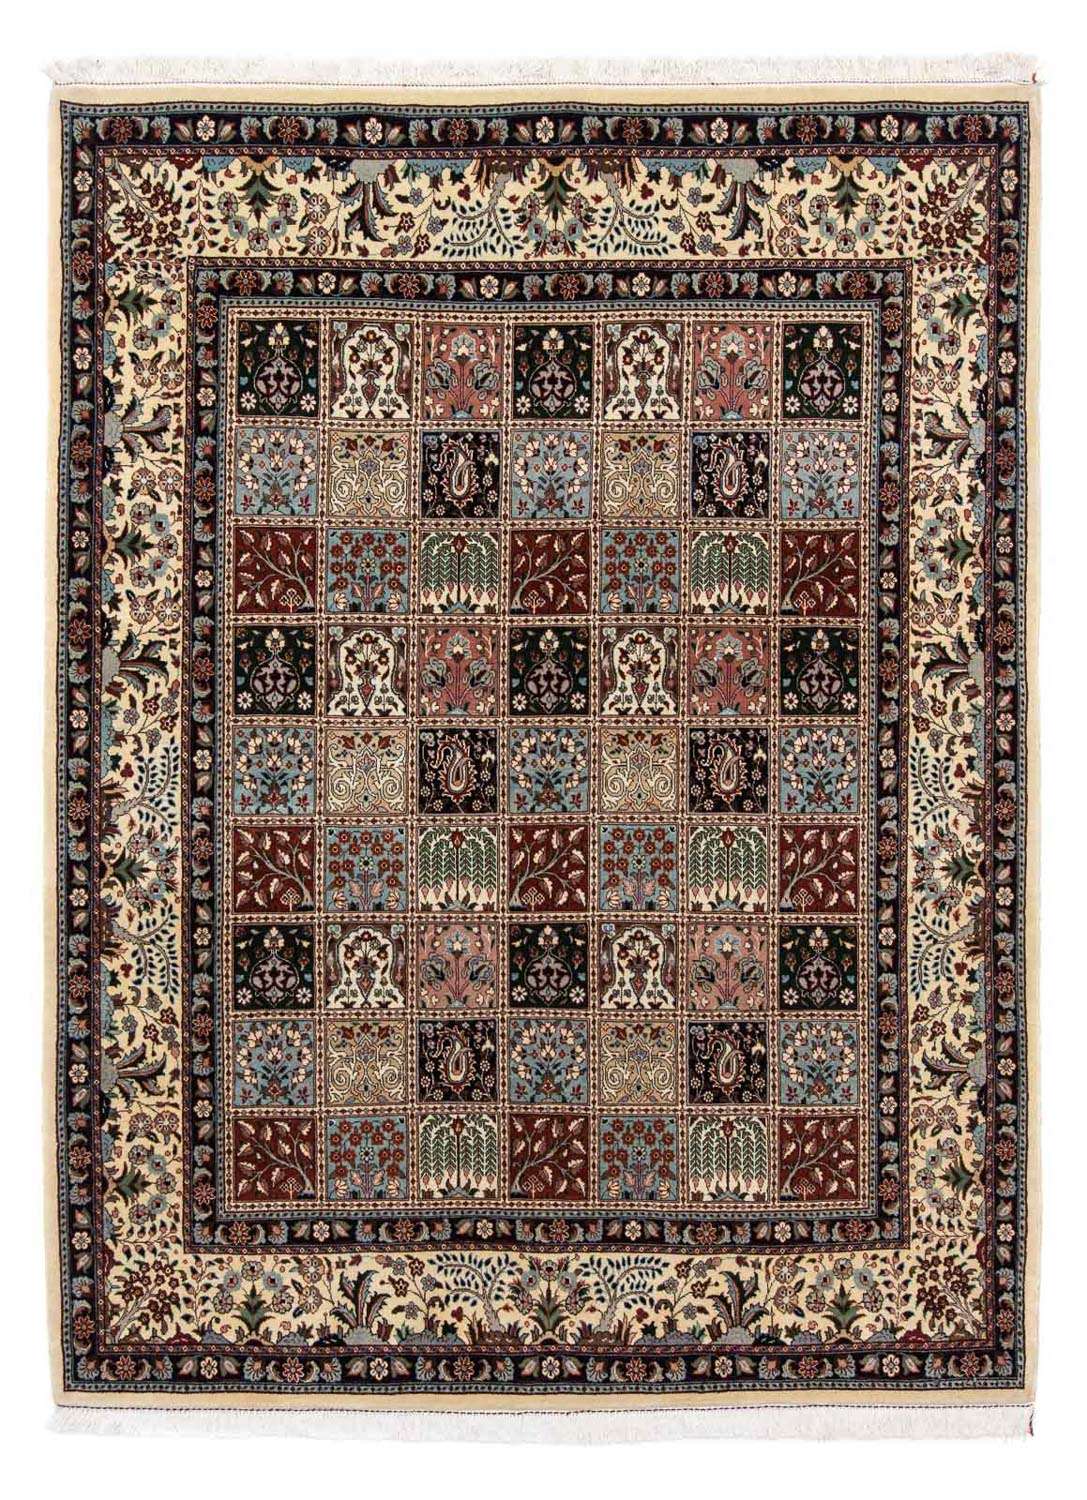 Persisk tæppe - Classic - 242 x 184 cm - flerfarvet